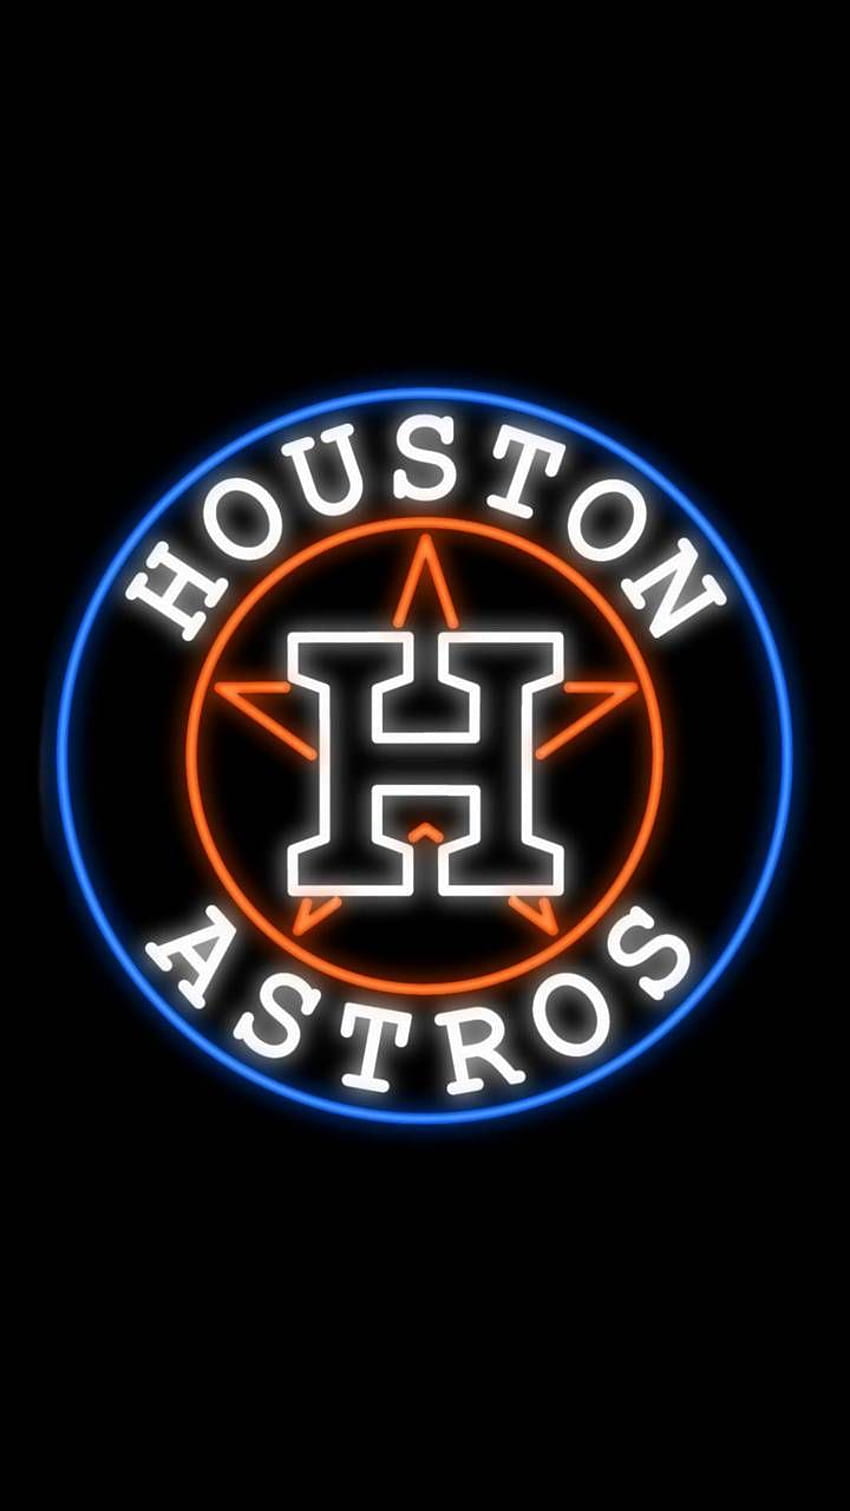 45 Houston Astros iPhone Wallpaper  WallpaperSafari